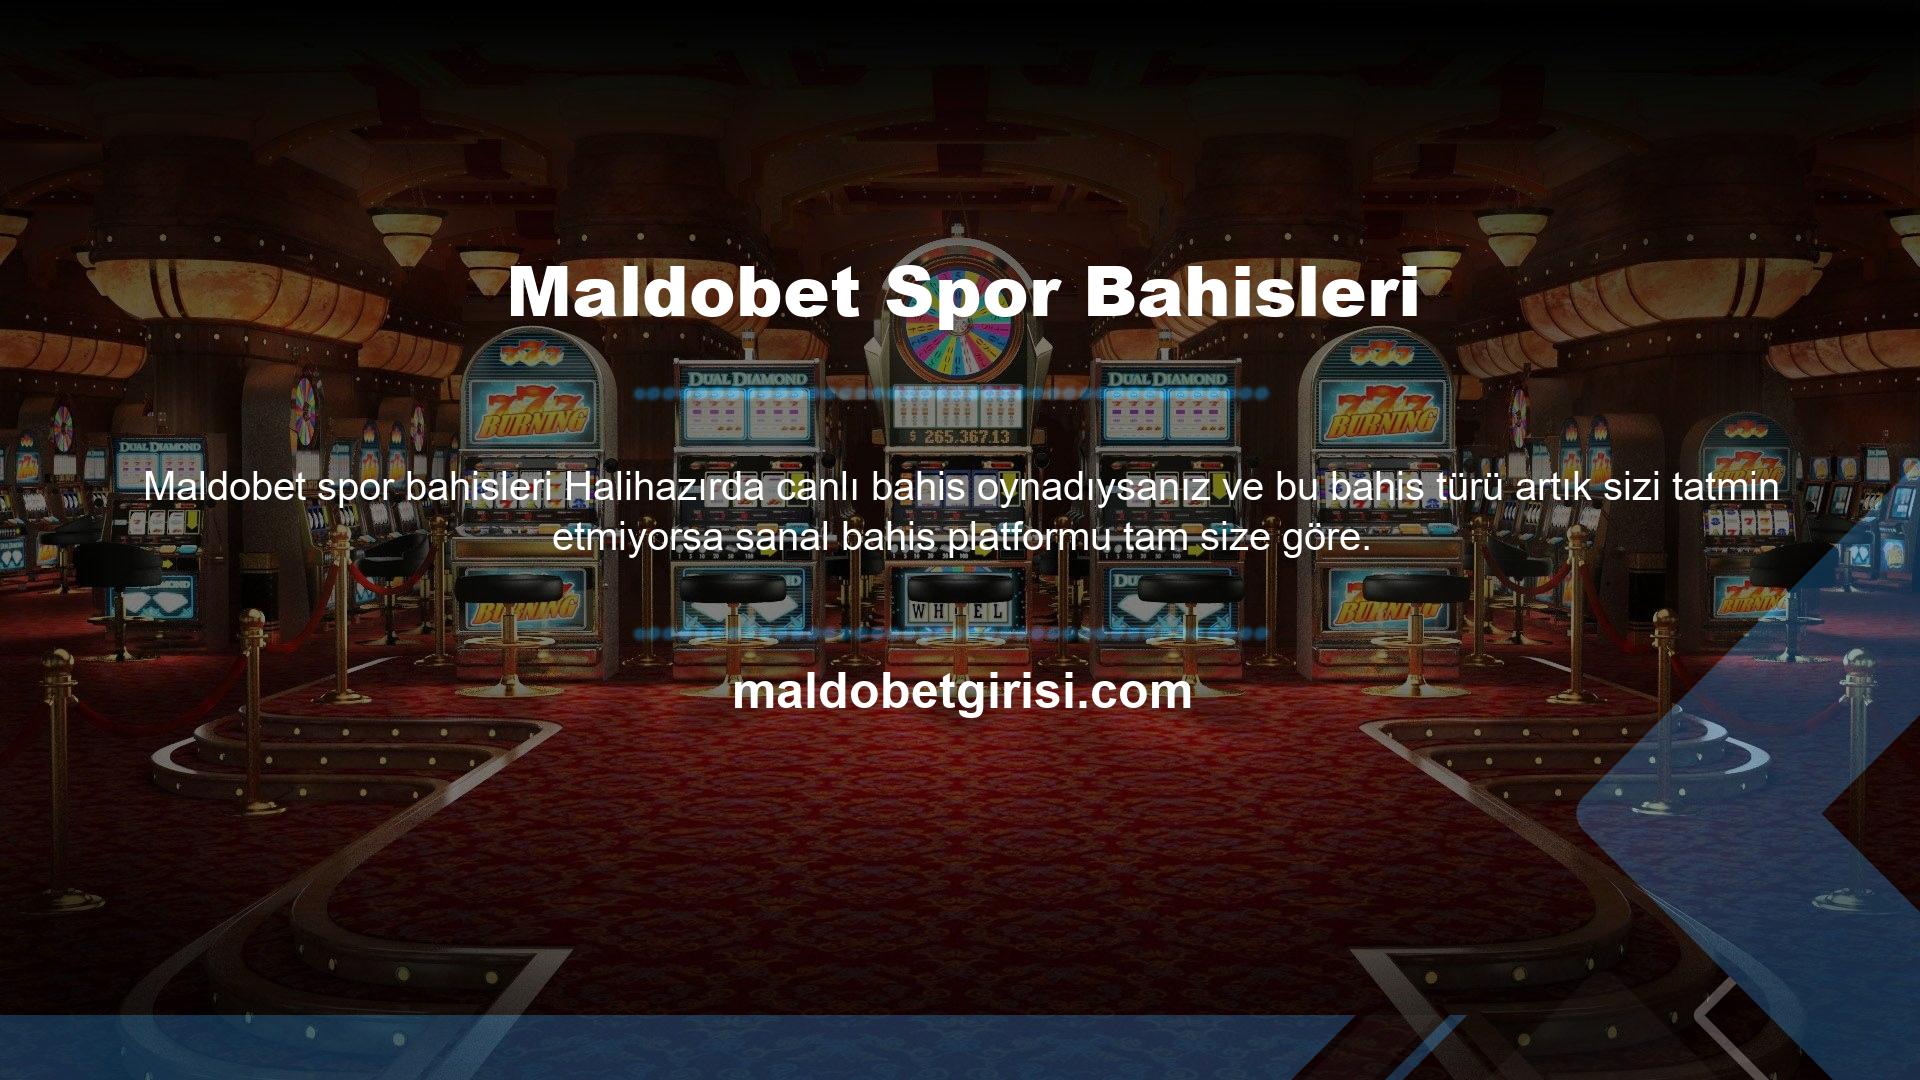 Maldobet Sportsbook oynamak için öncelikle kurumun resmi Maldobet Sportsbook web sitesine giriş yapmalı ve sağ üst köşede yer alan Kayıt ol butonuna tıklamalısınız